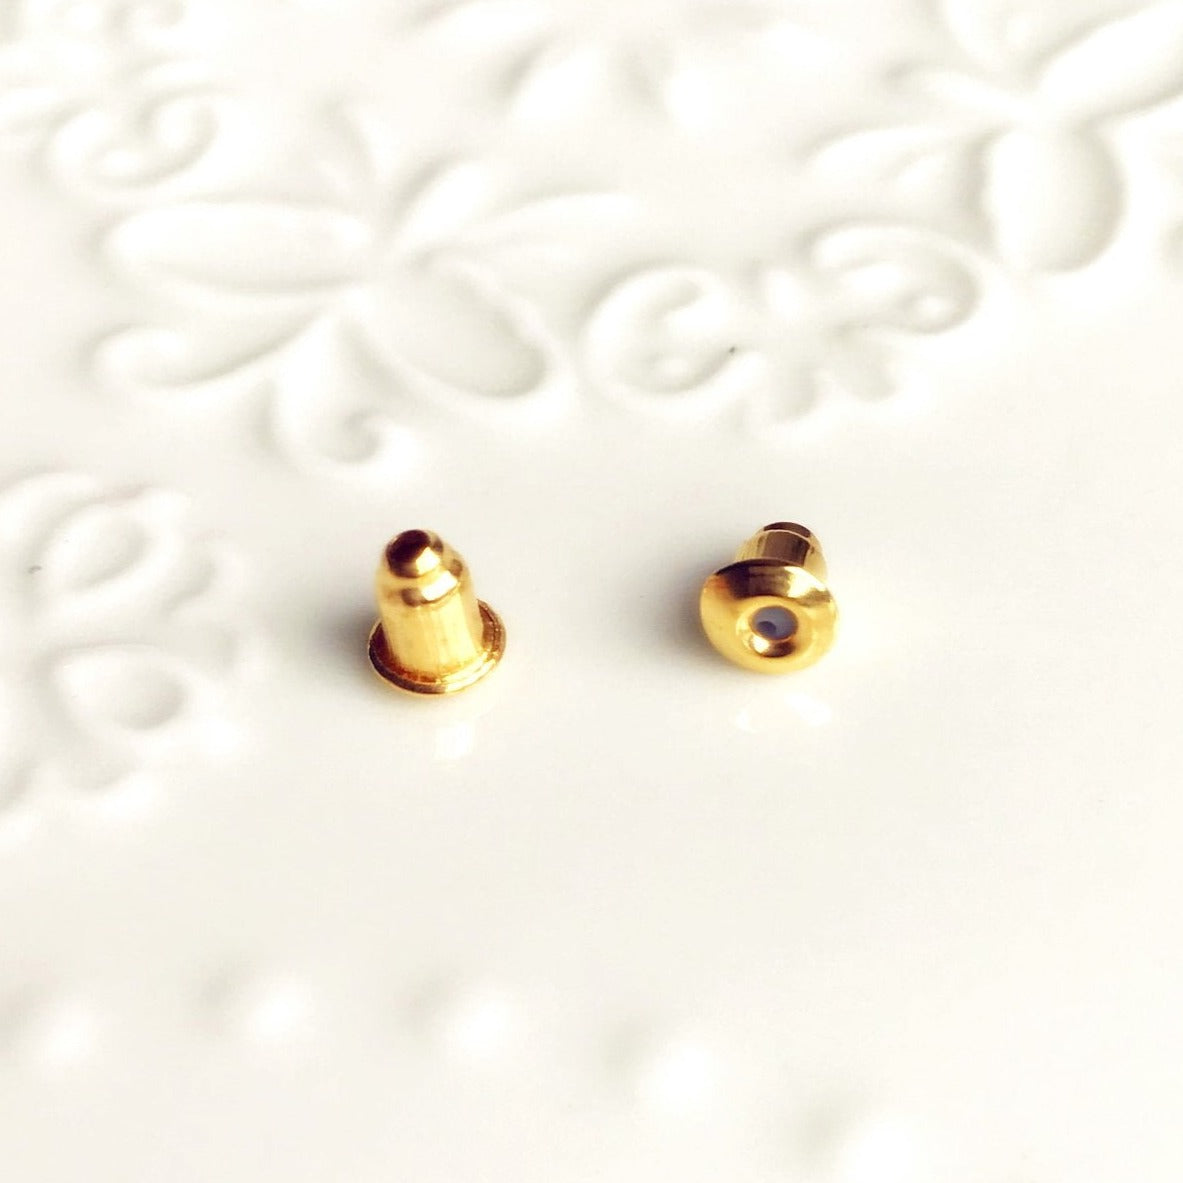 Gloss Gold Metal Earring Backs